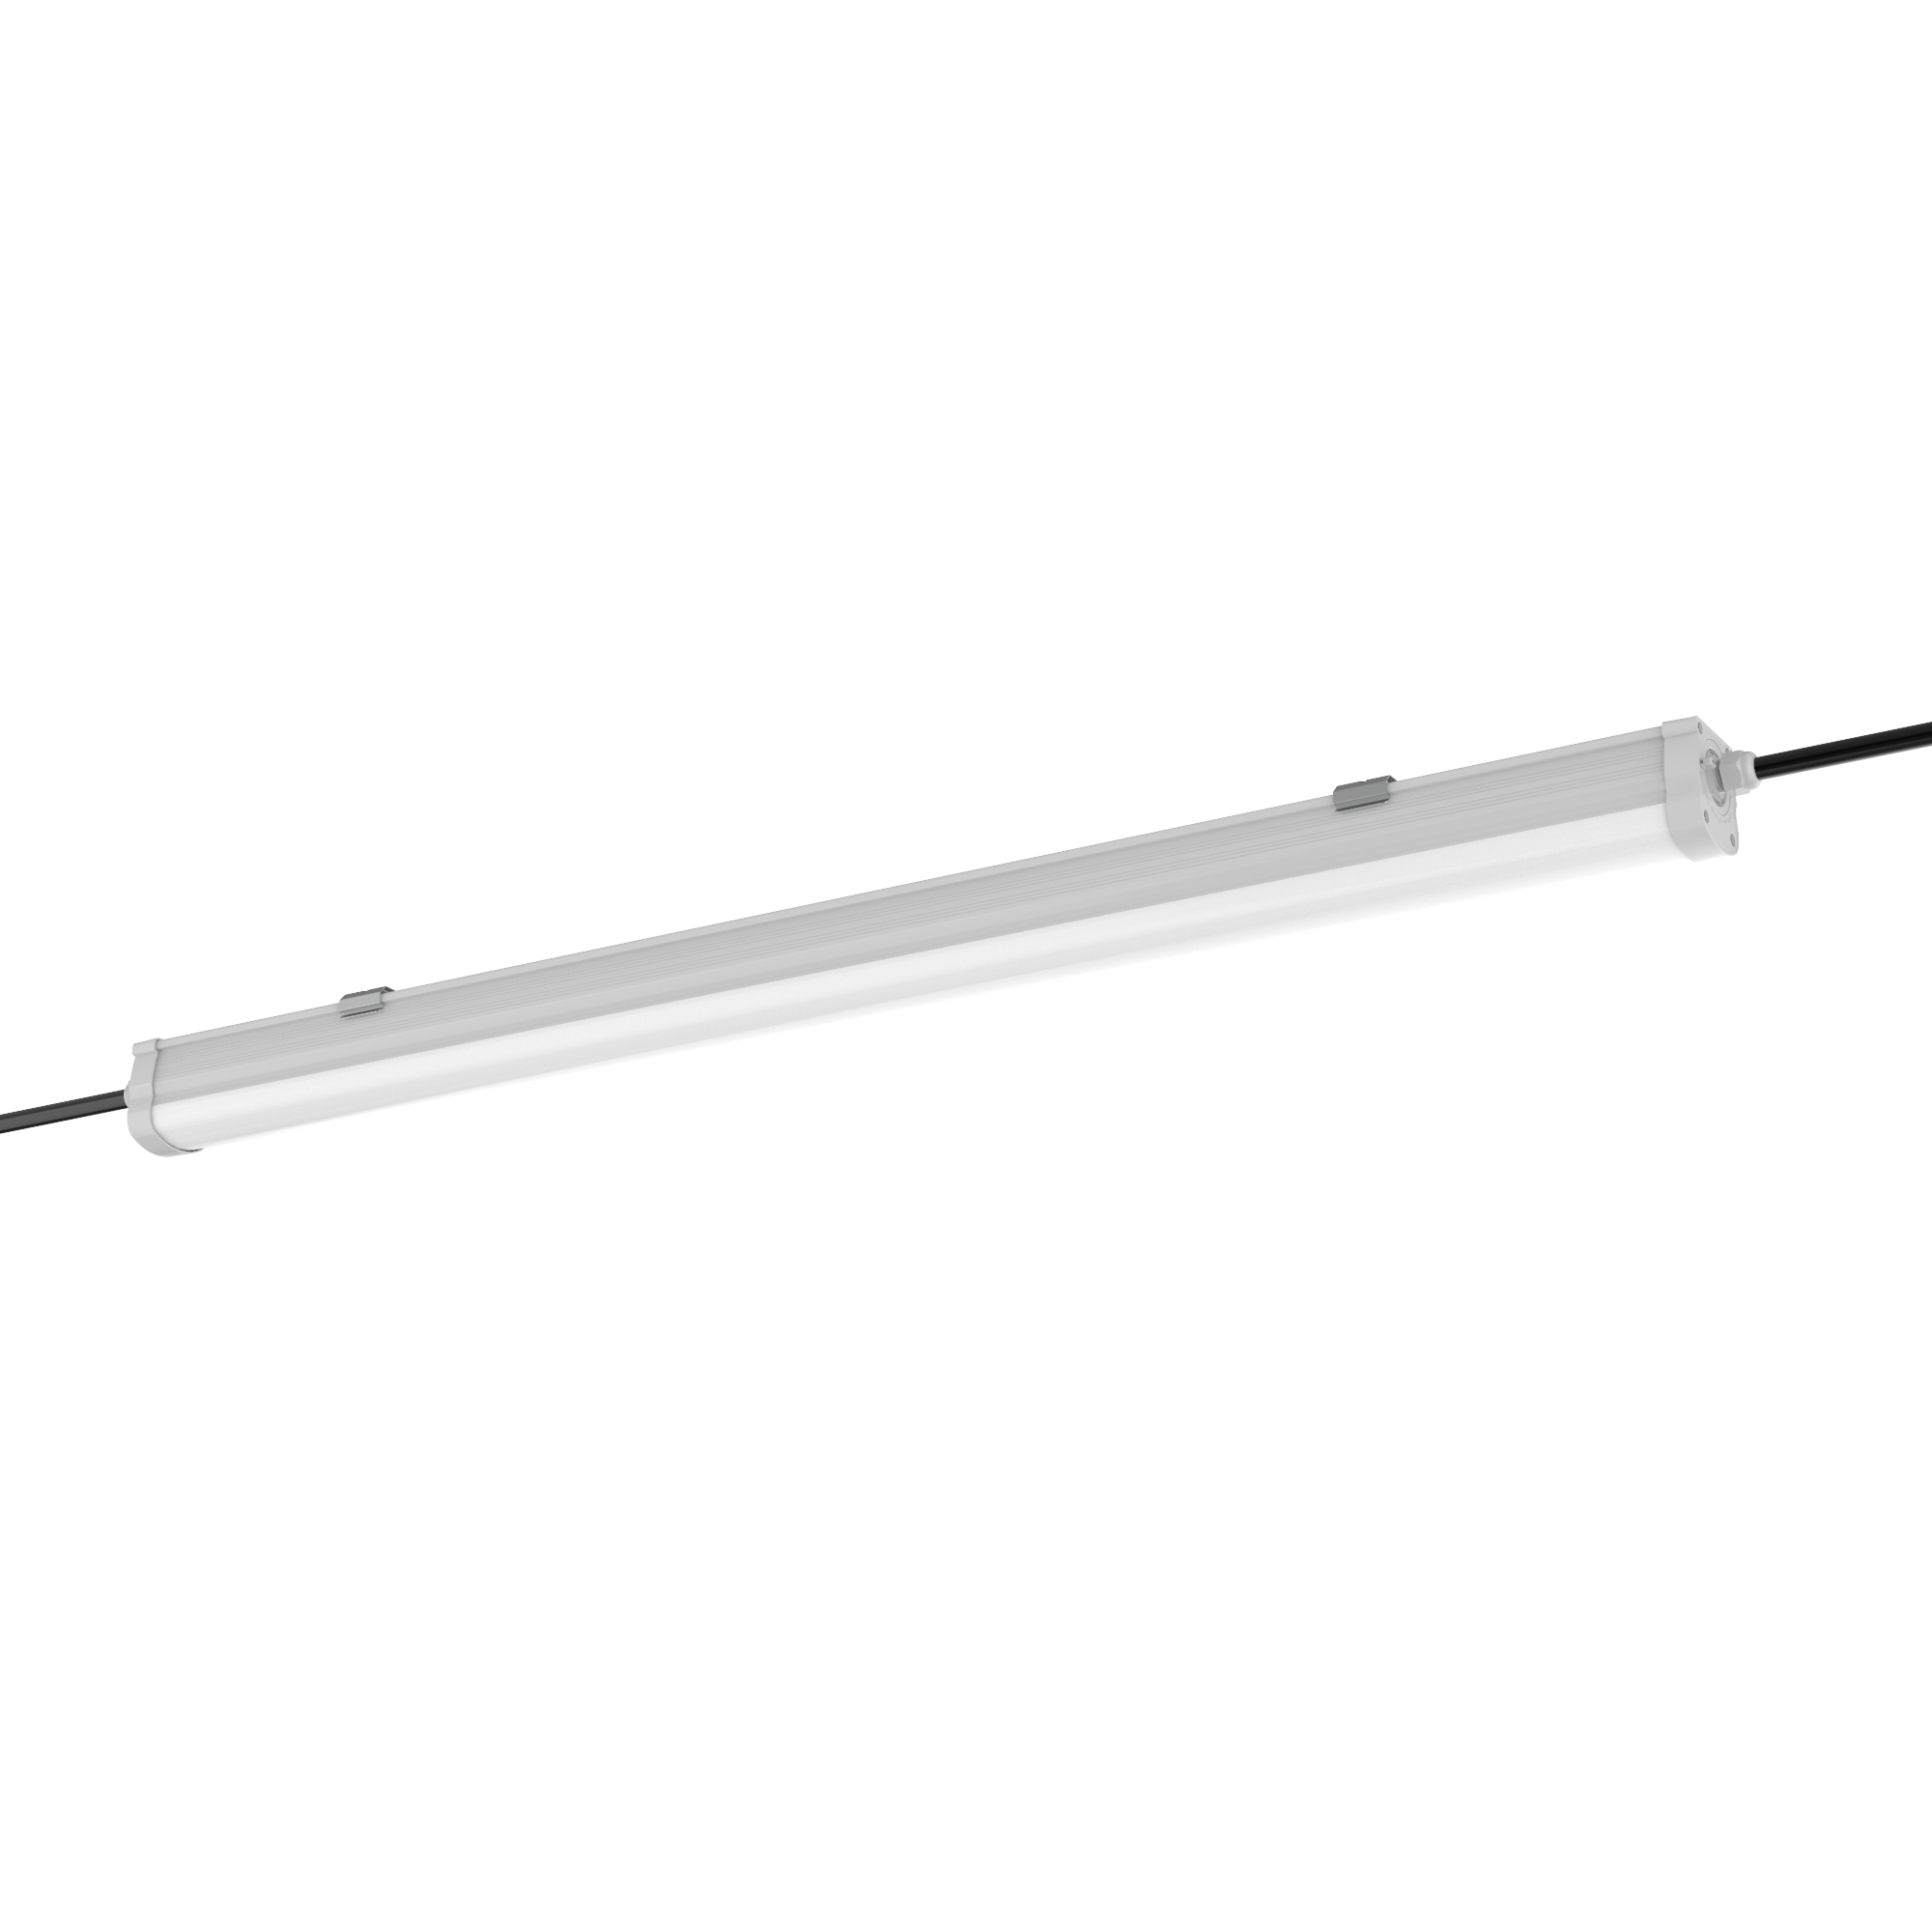 Engel LED Feuchtraumleuchte 60-150cm - IP65 Wasserdicht, Reihenschaltu | 